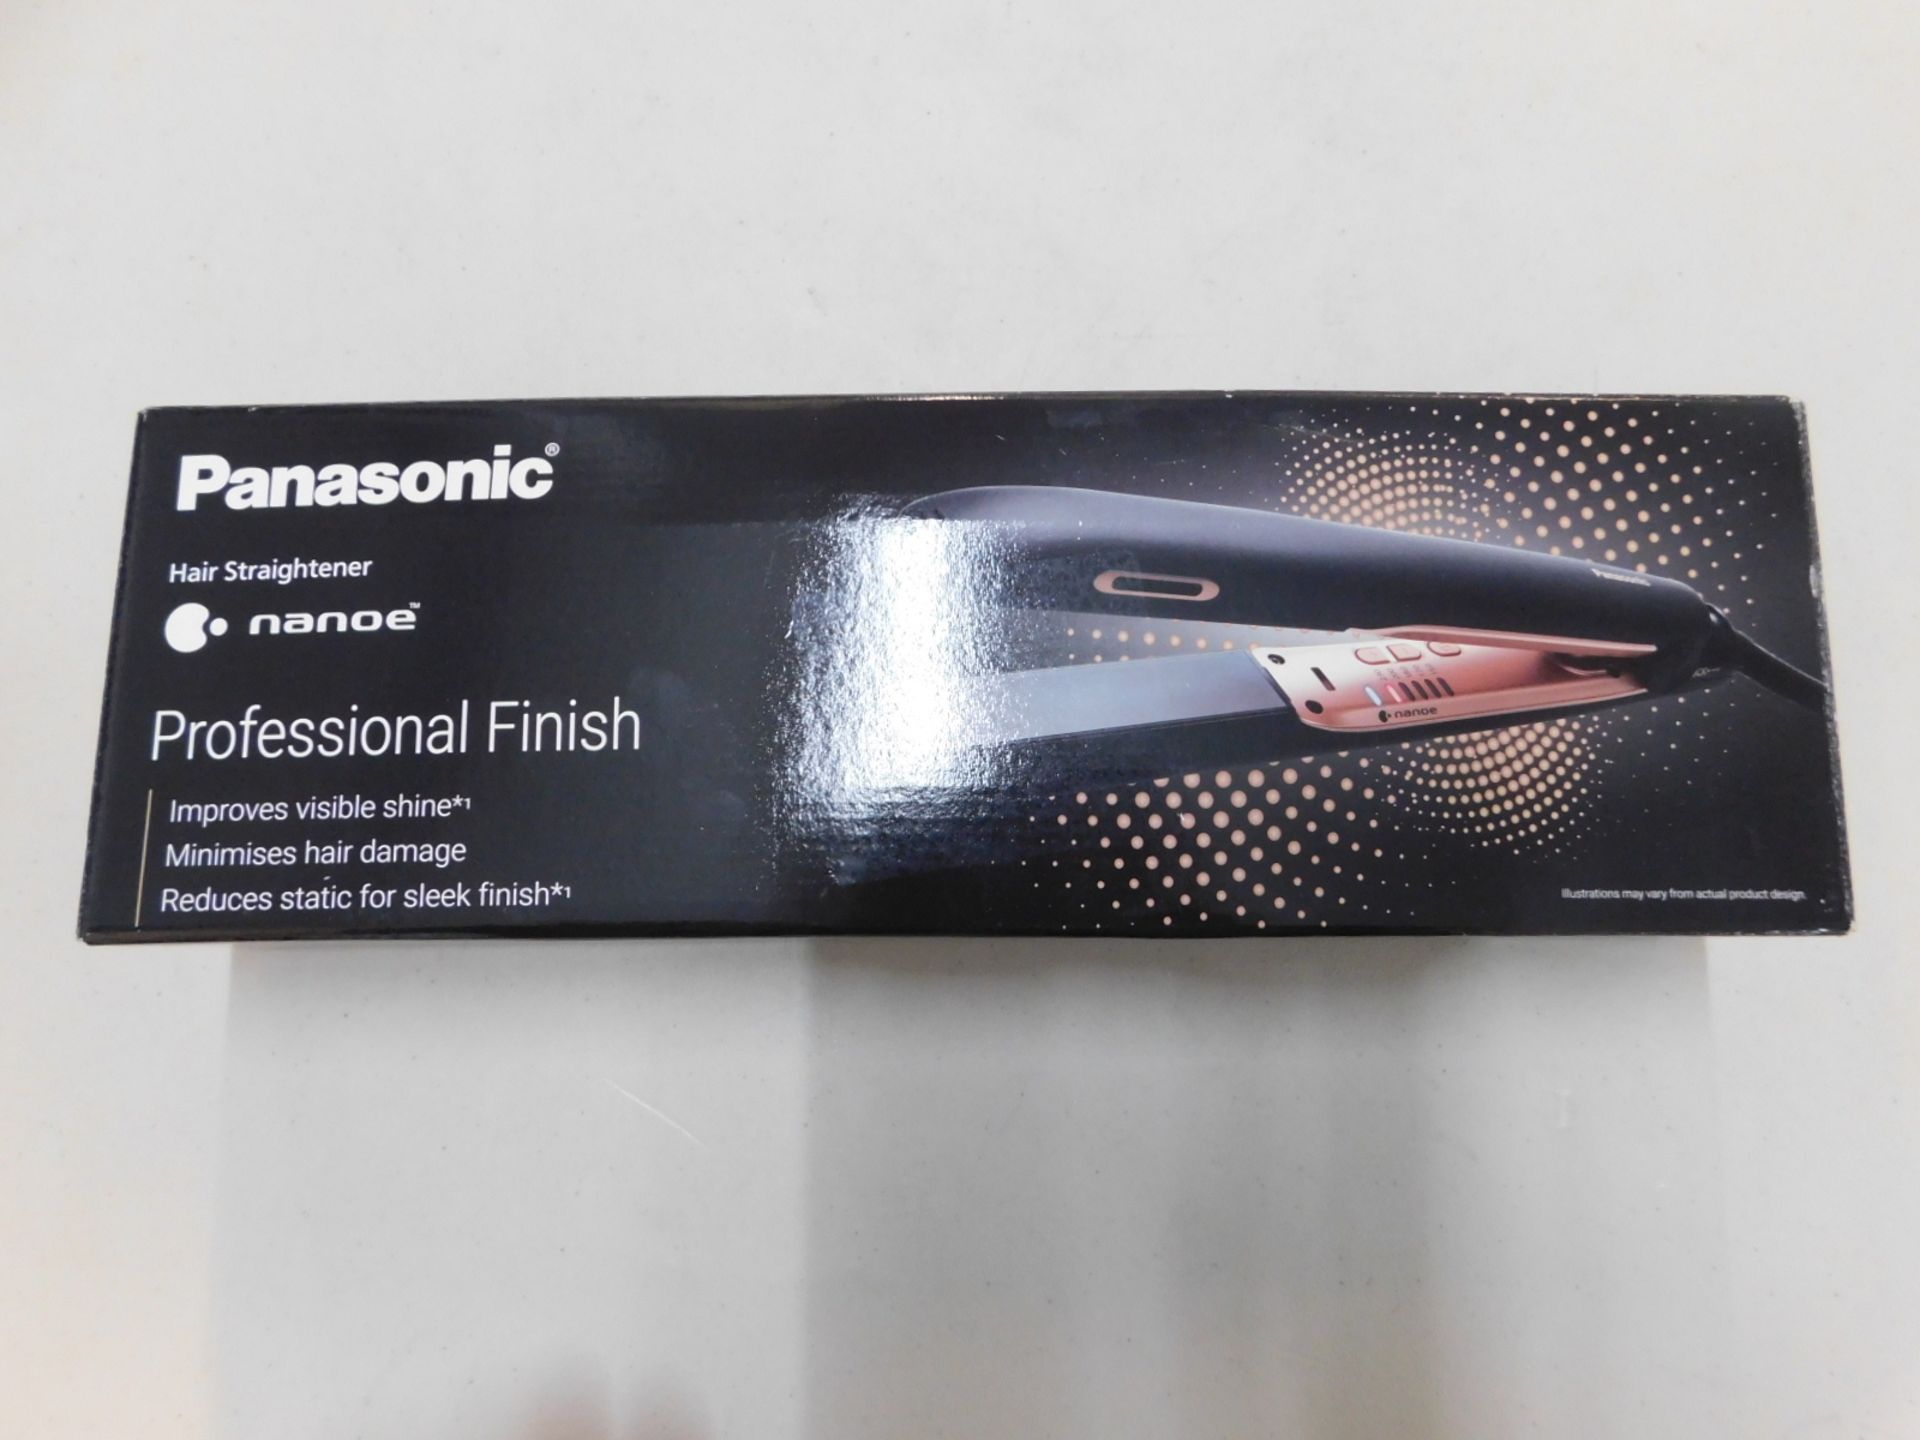 1 BOXED PANASONIC EH-HS99 NANOEâ„¢ CERAMIC HAIR STRAIGHTENER WITH TEMPERATURE CONTROL (BLACK/ROSE